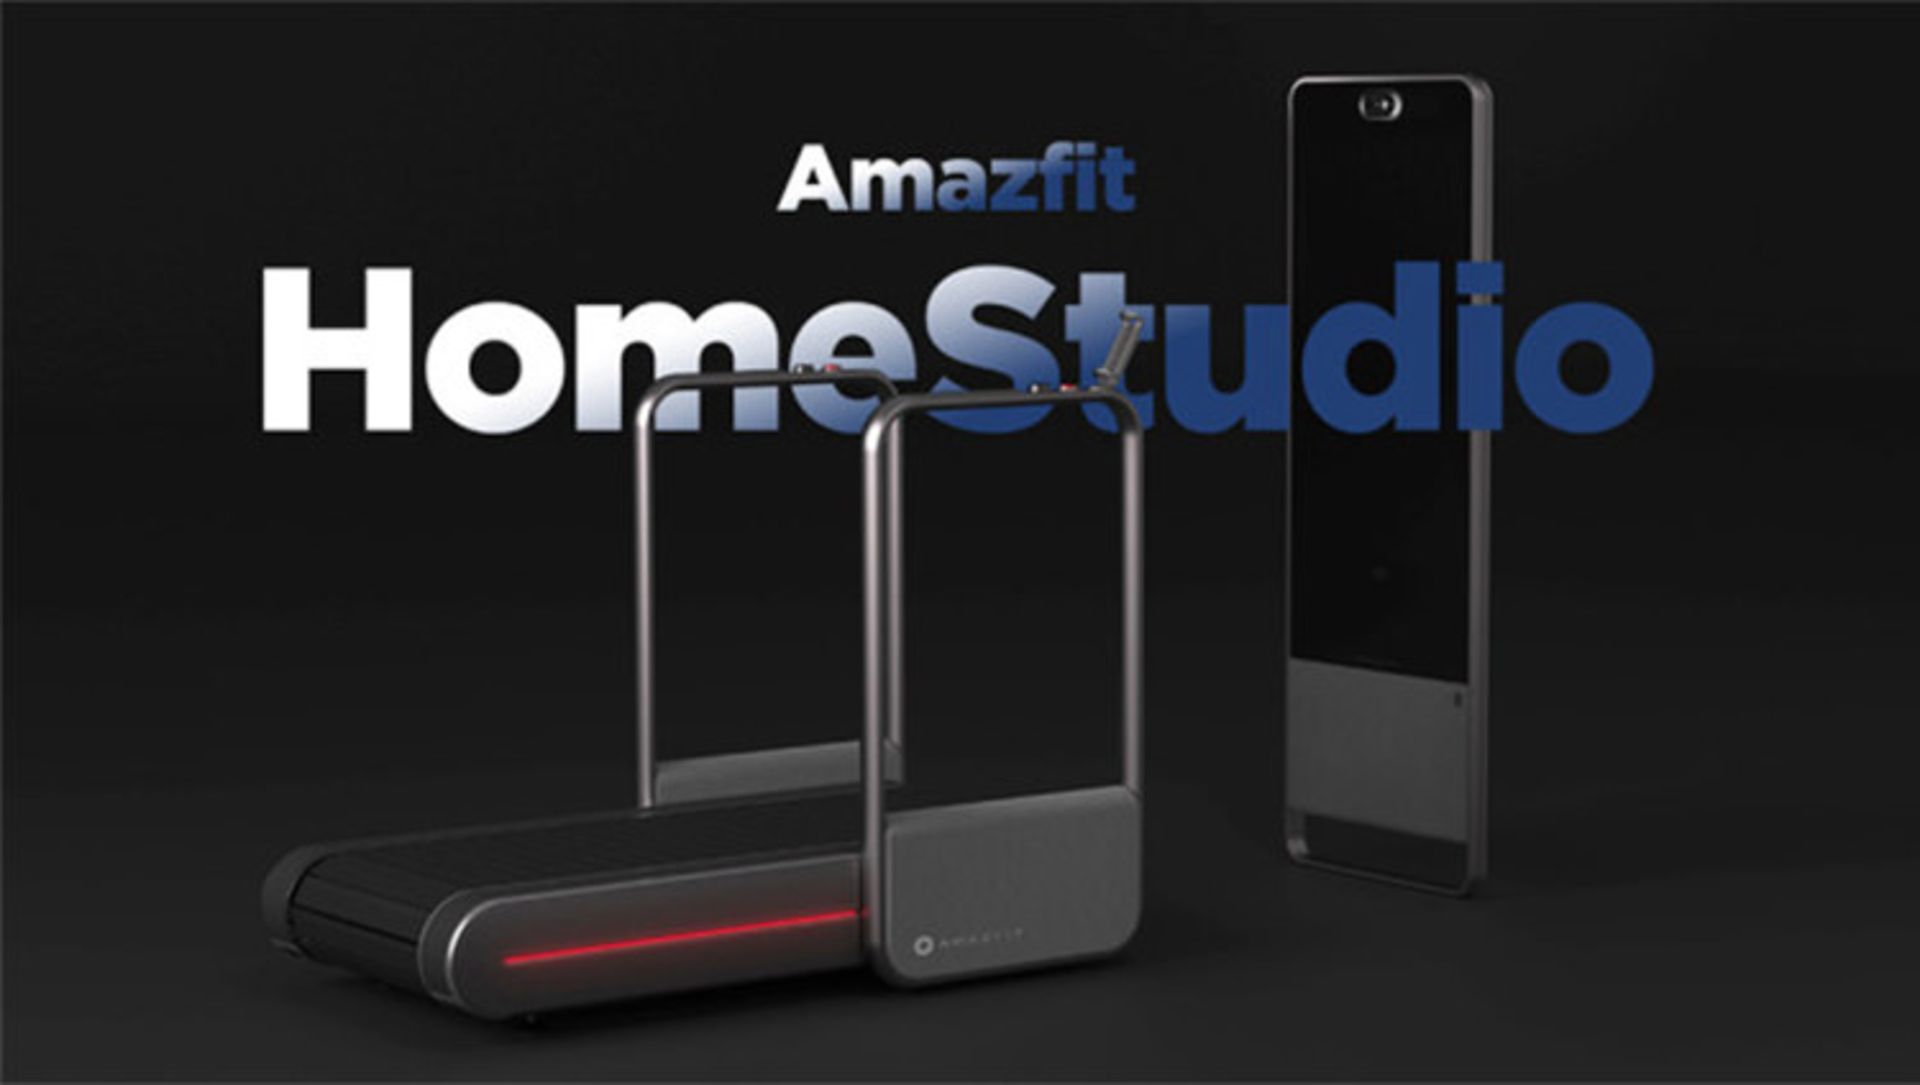 Amazfit HomeStudio